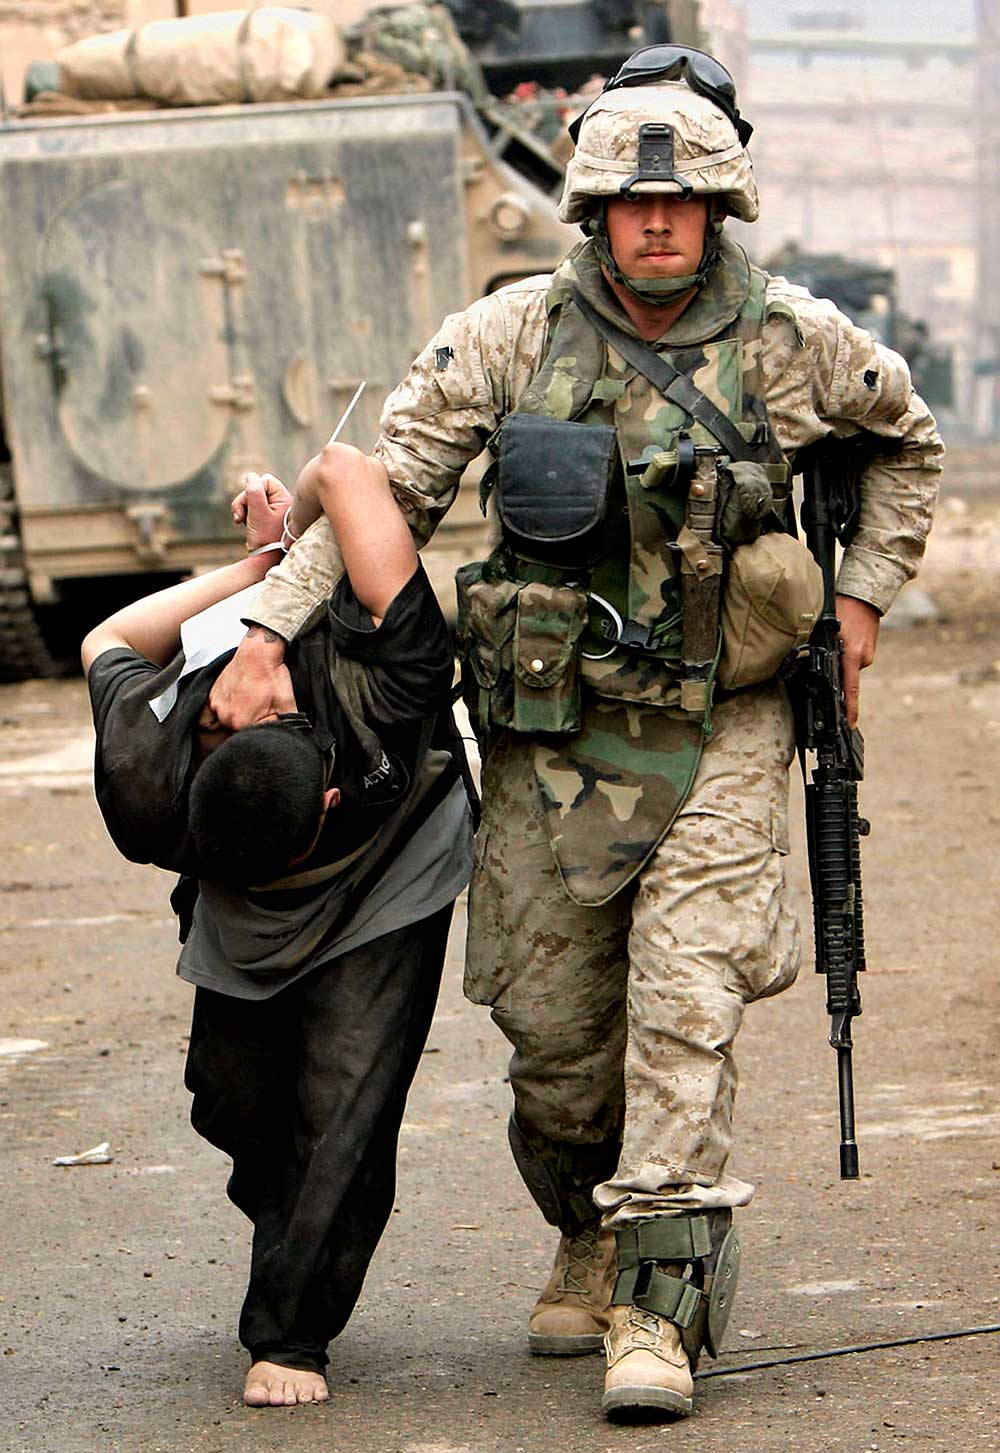 A U.S. Marine leads away a captured Iraqi man in Fallujah, Iraq, in 2004